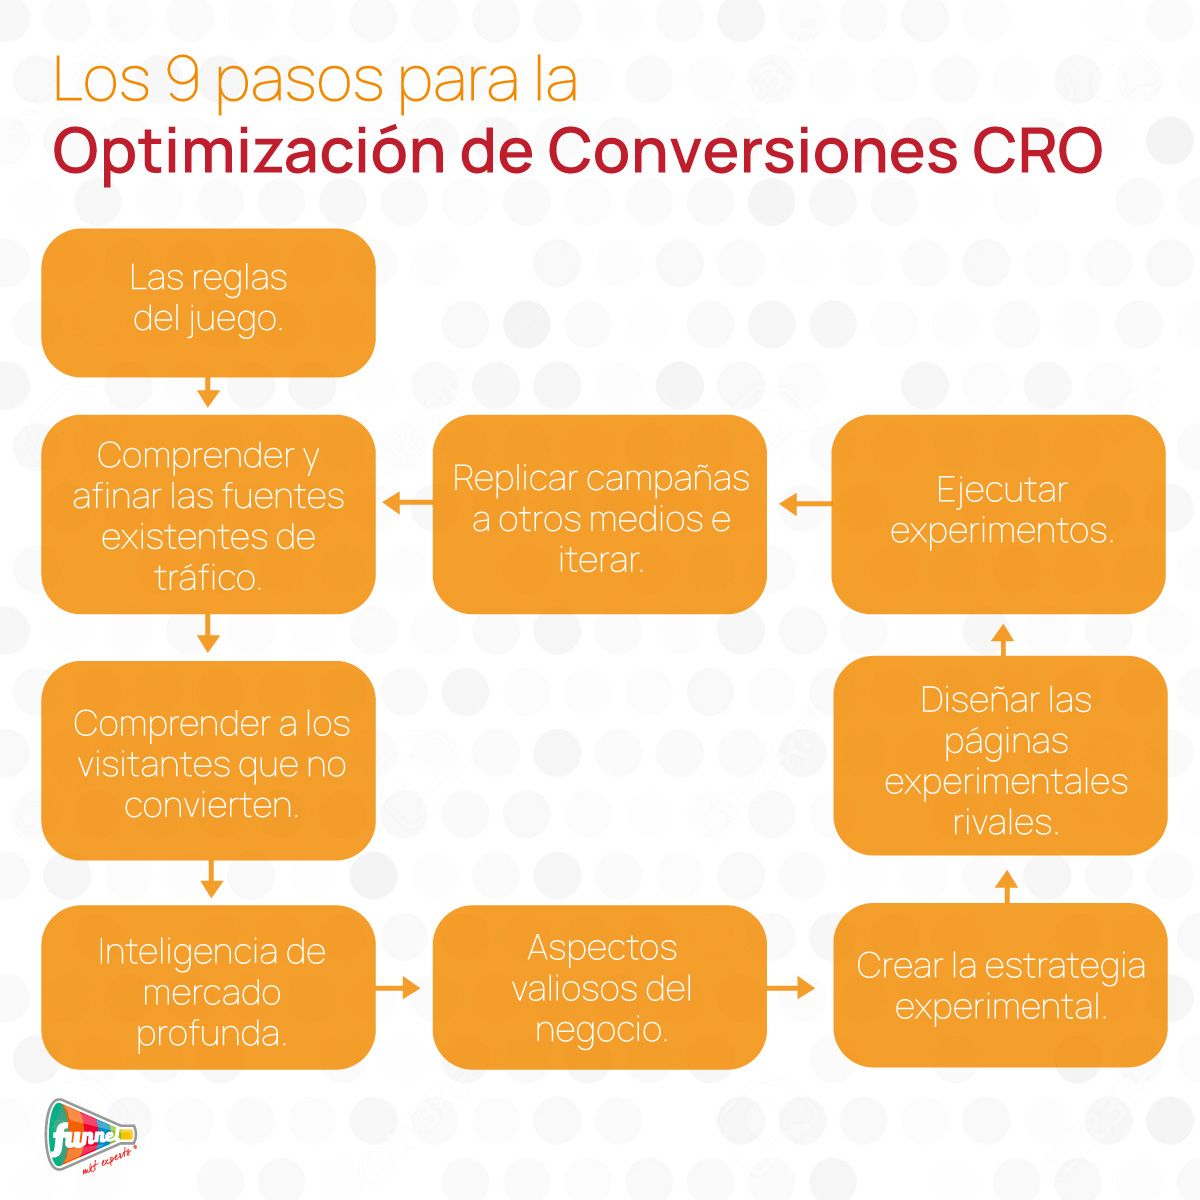 Optimización de conversiones Los 9 pasos del CRO